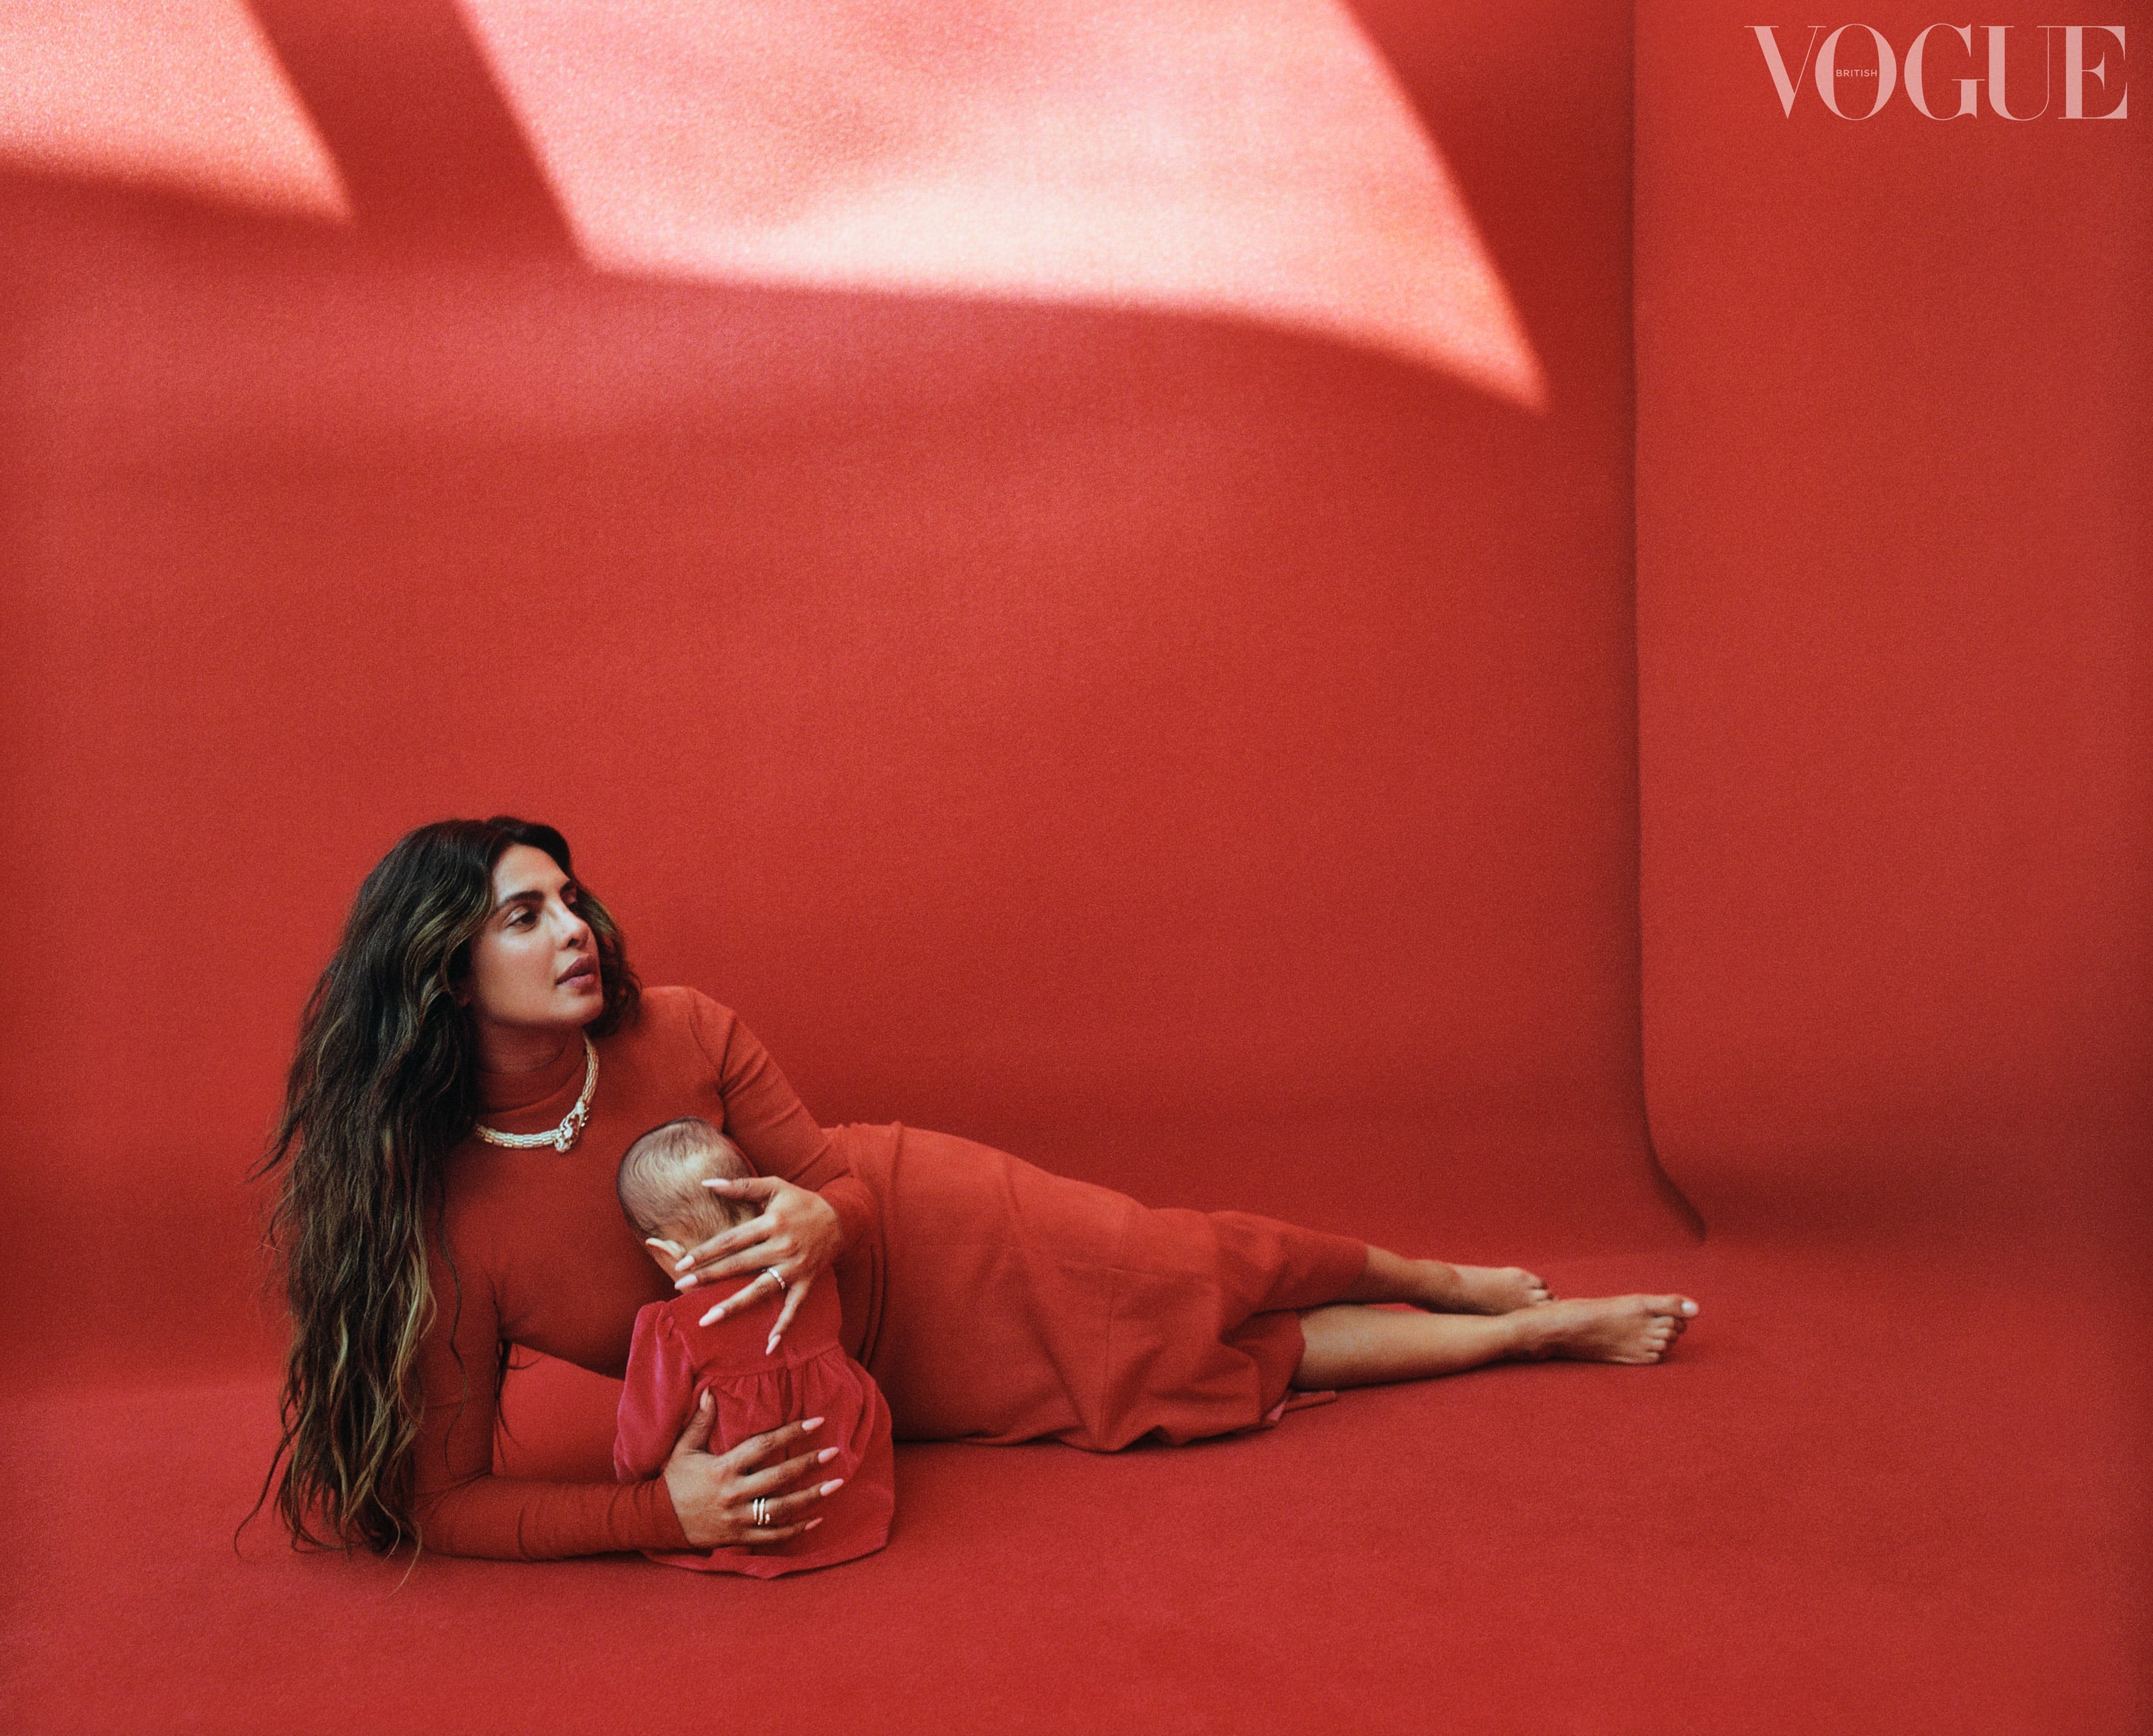 Alexander McQueen design award, British Vogue